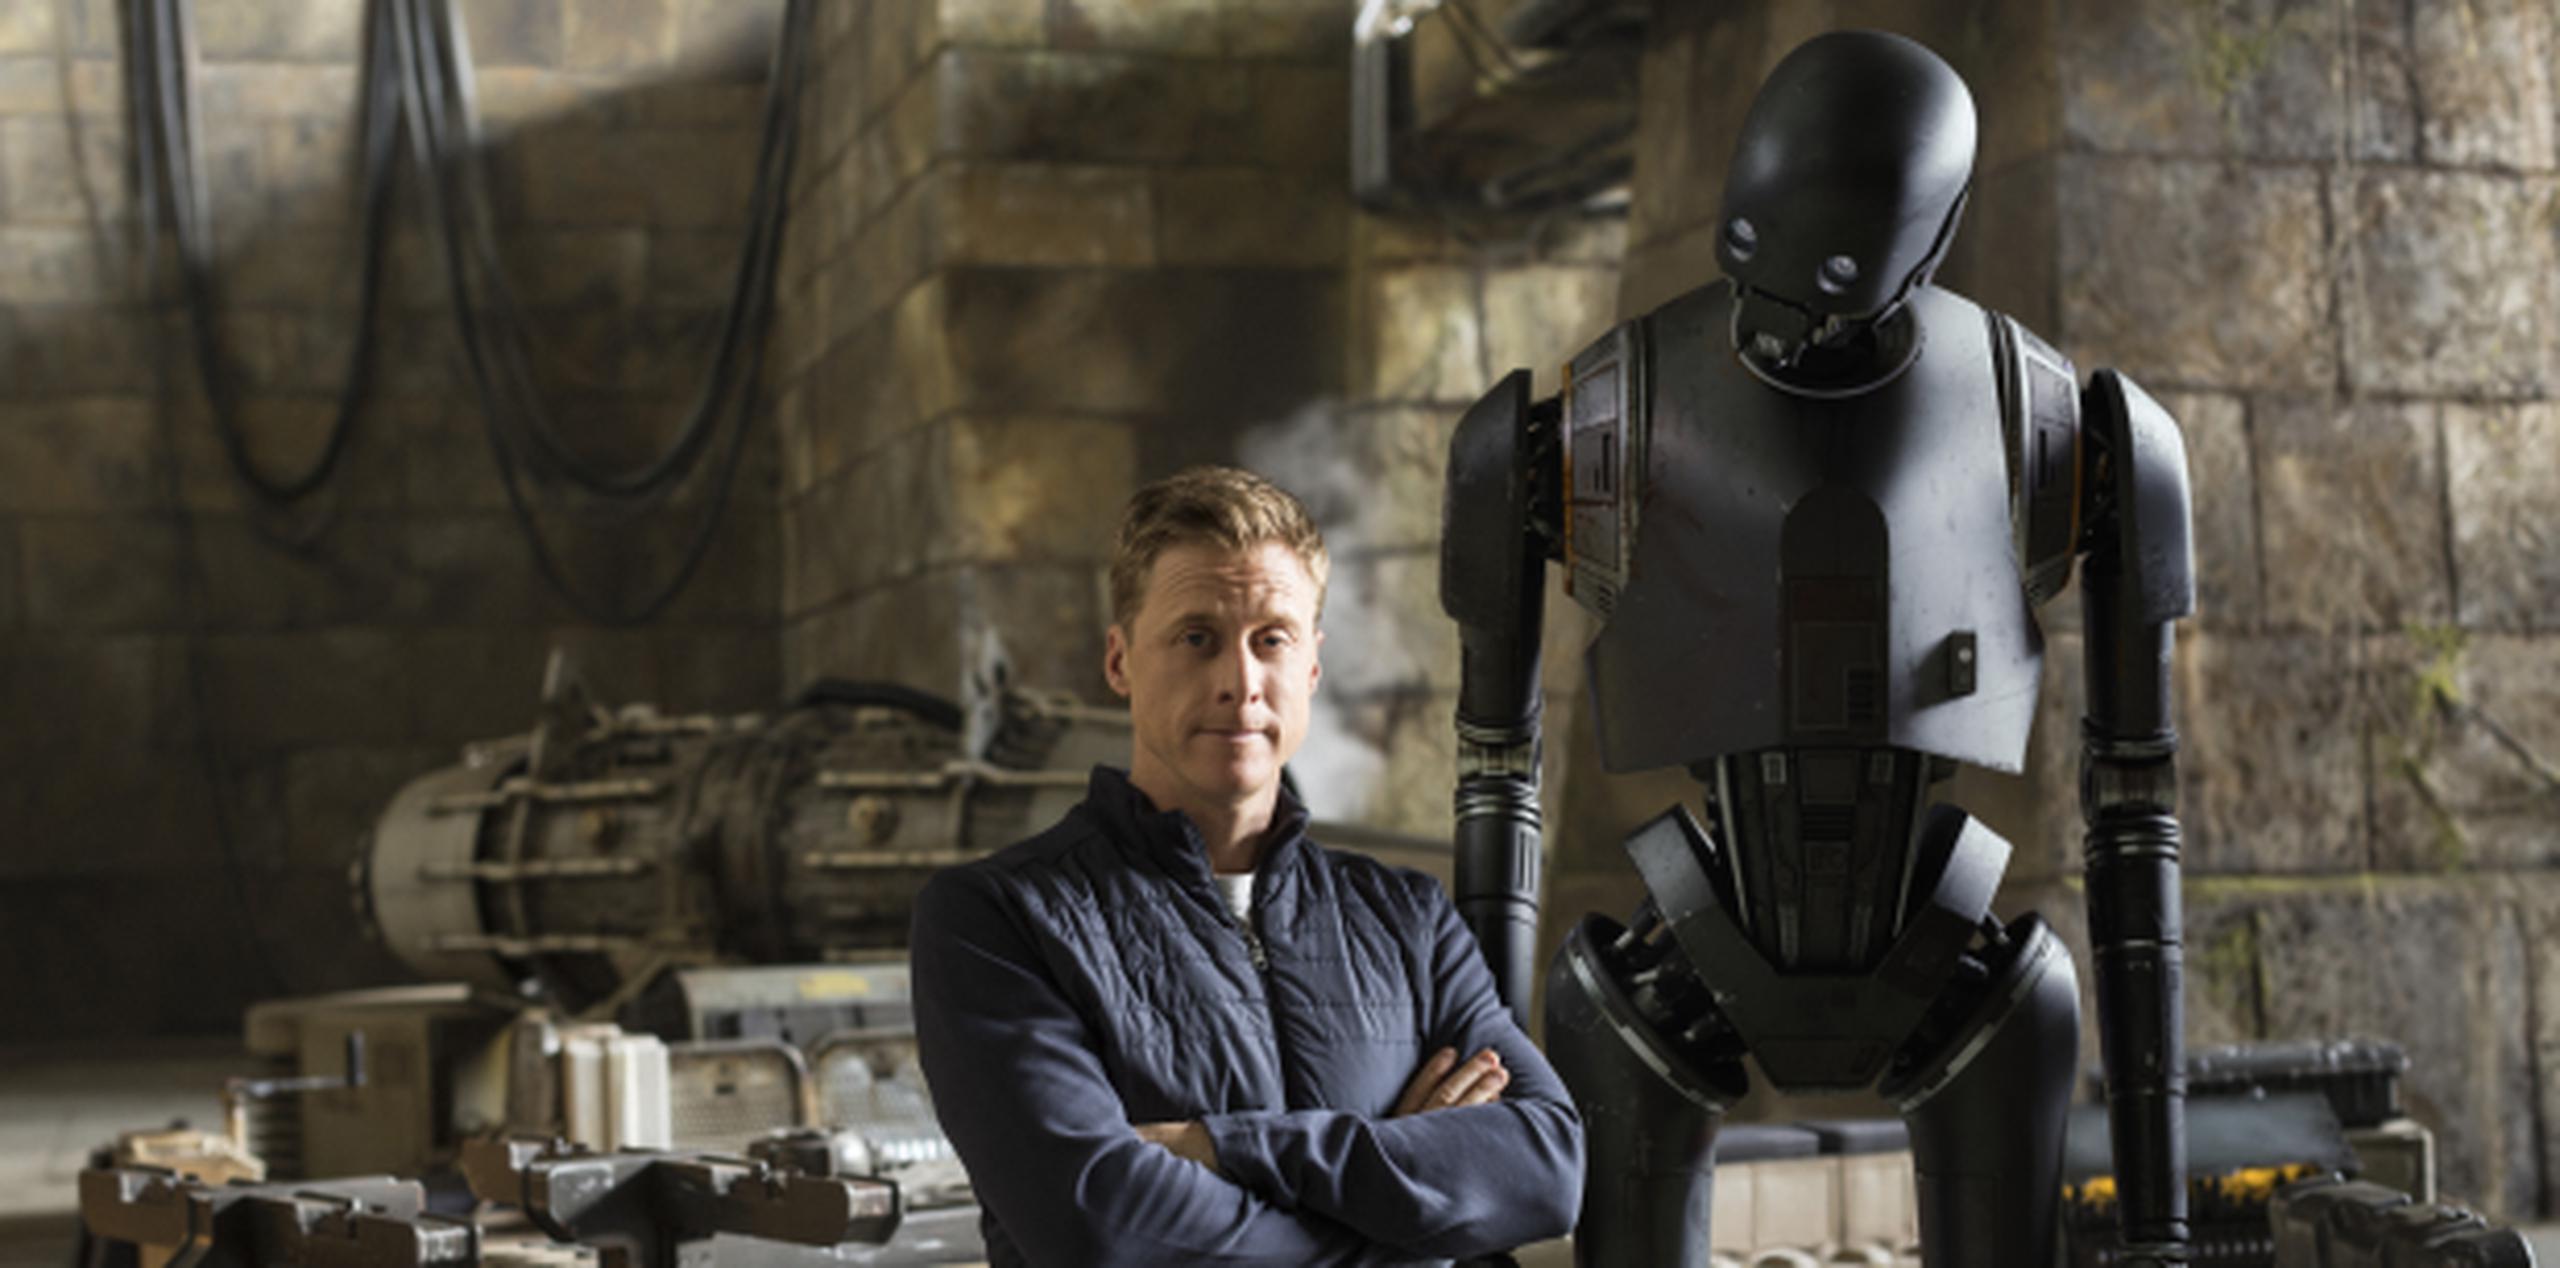 Alan Tudyk es uno de los protagonistas de la última entrega de la saga de “Star Wars”, “Rogue One: A Star Wars Story”, dándole voz y vida al robot K-2SO. (Suministrada)